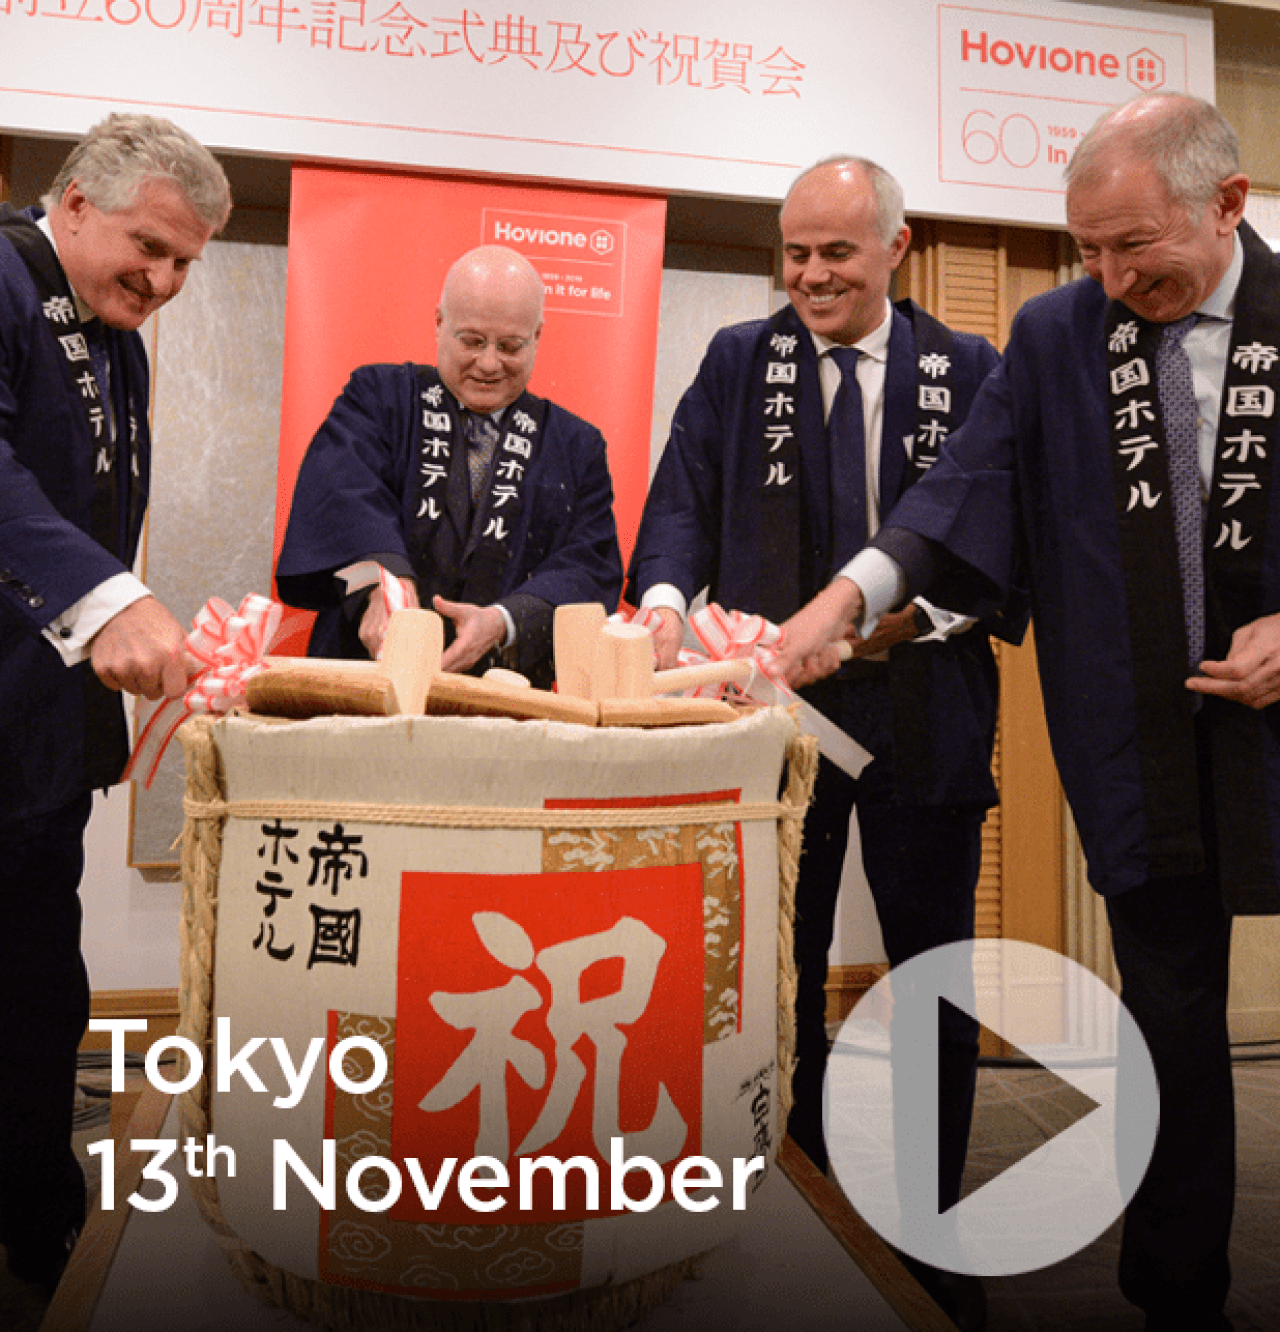 60th Anniversary Tokyo video | Hovione